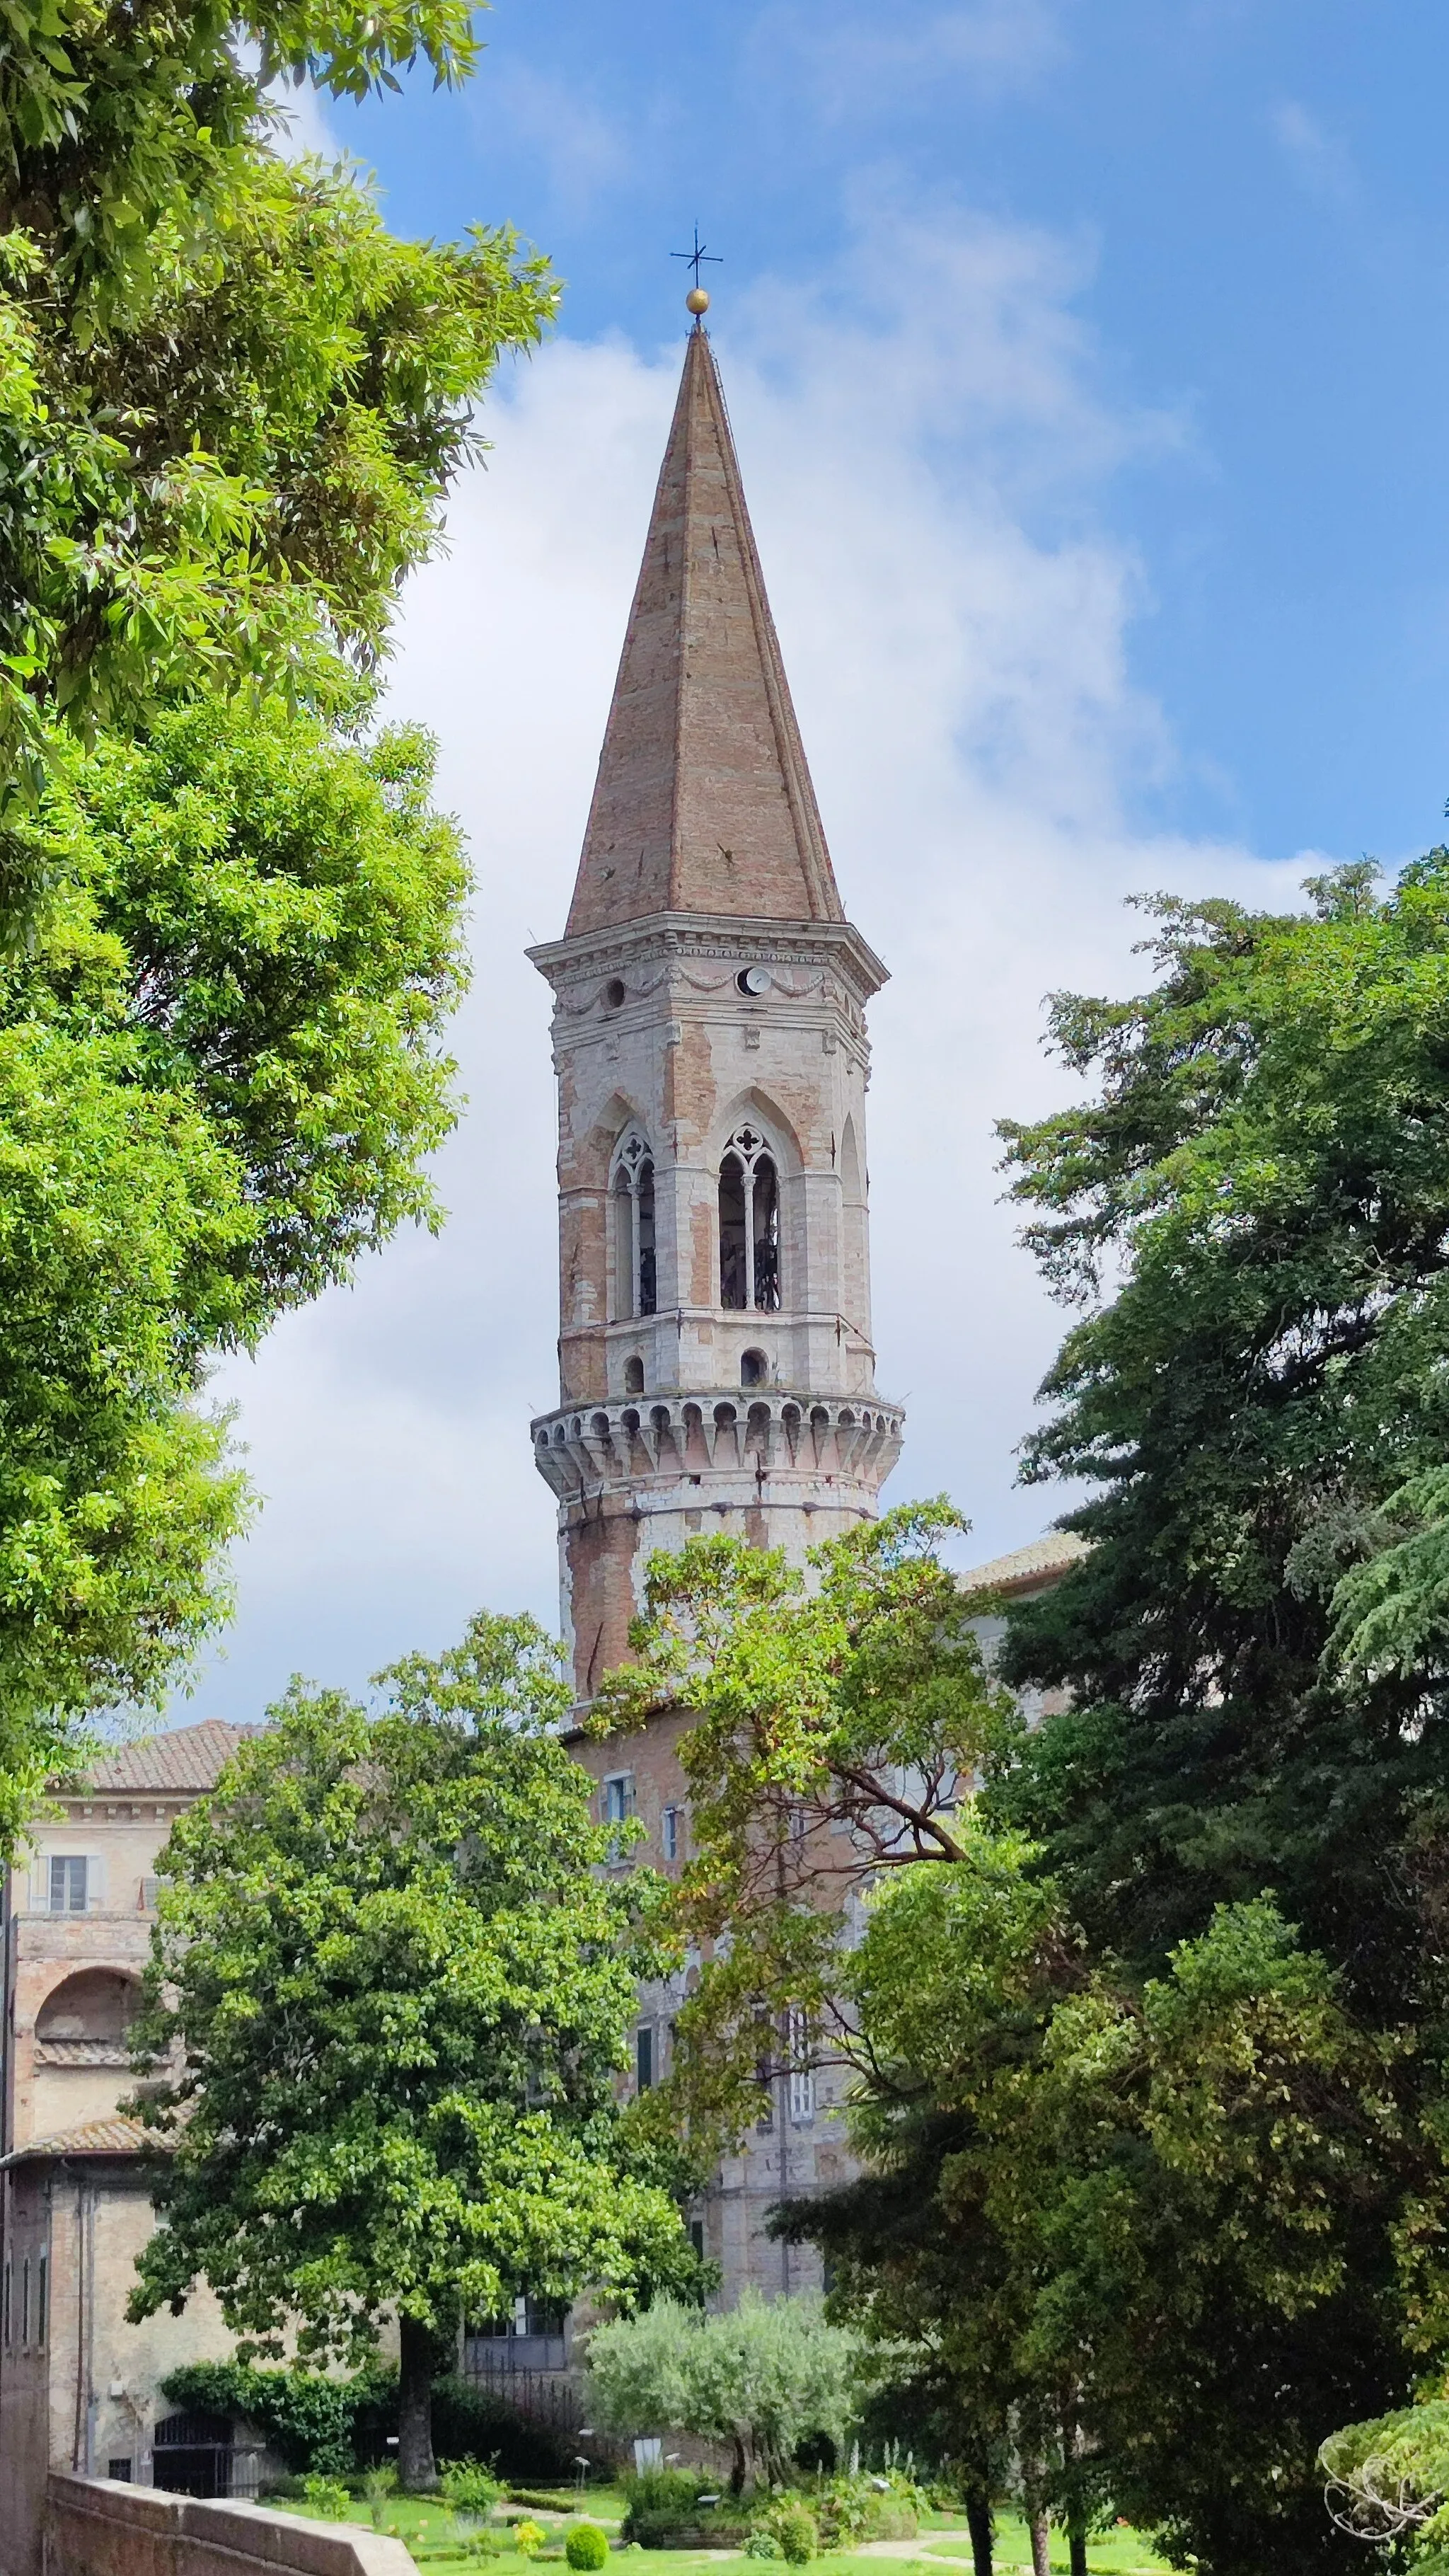 Image of Perugia